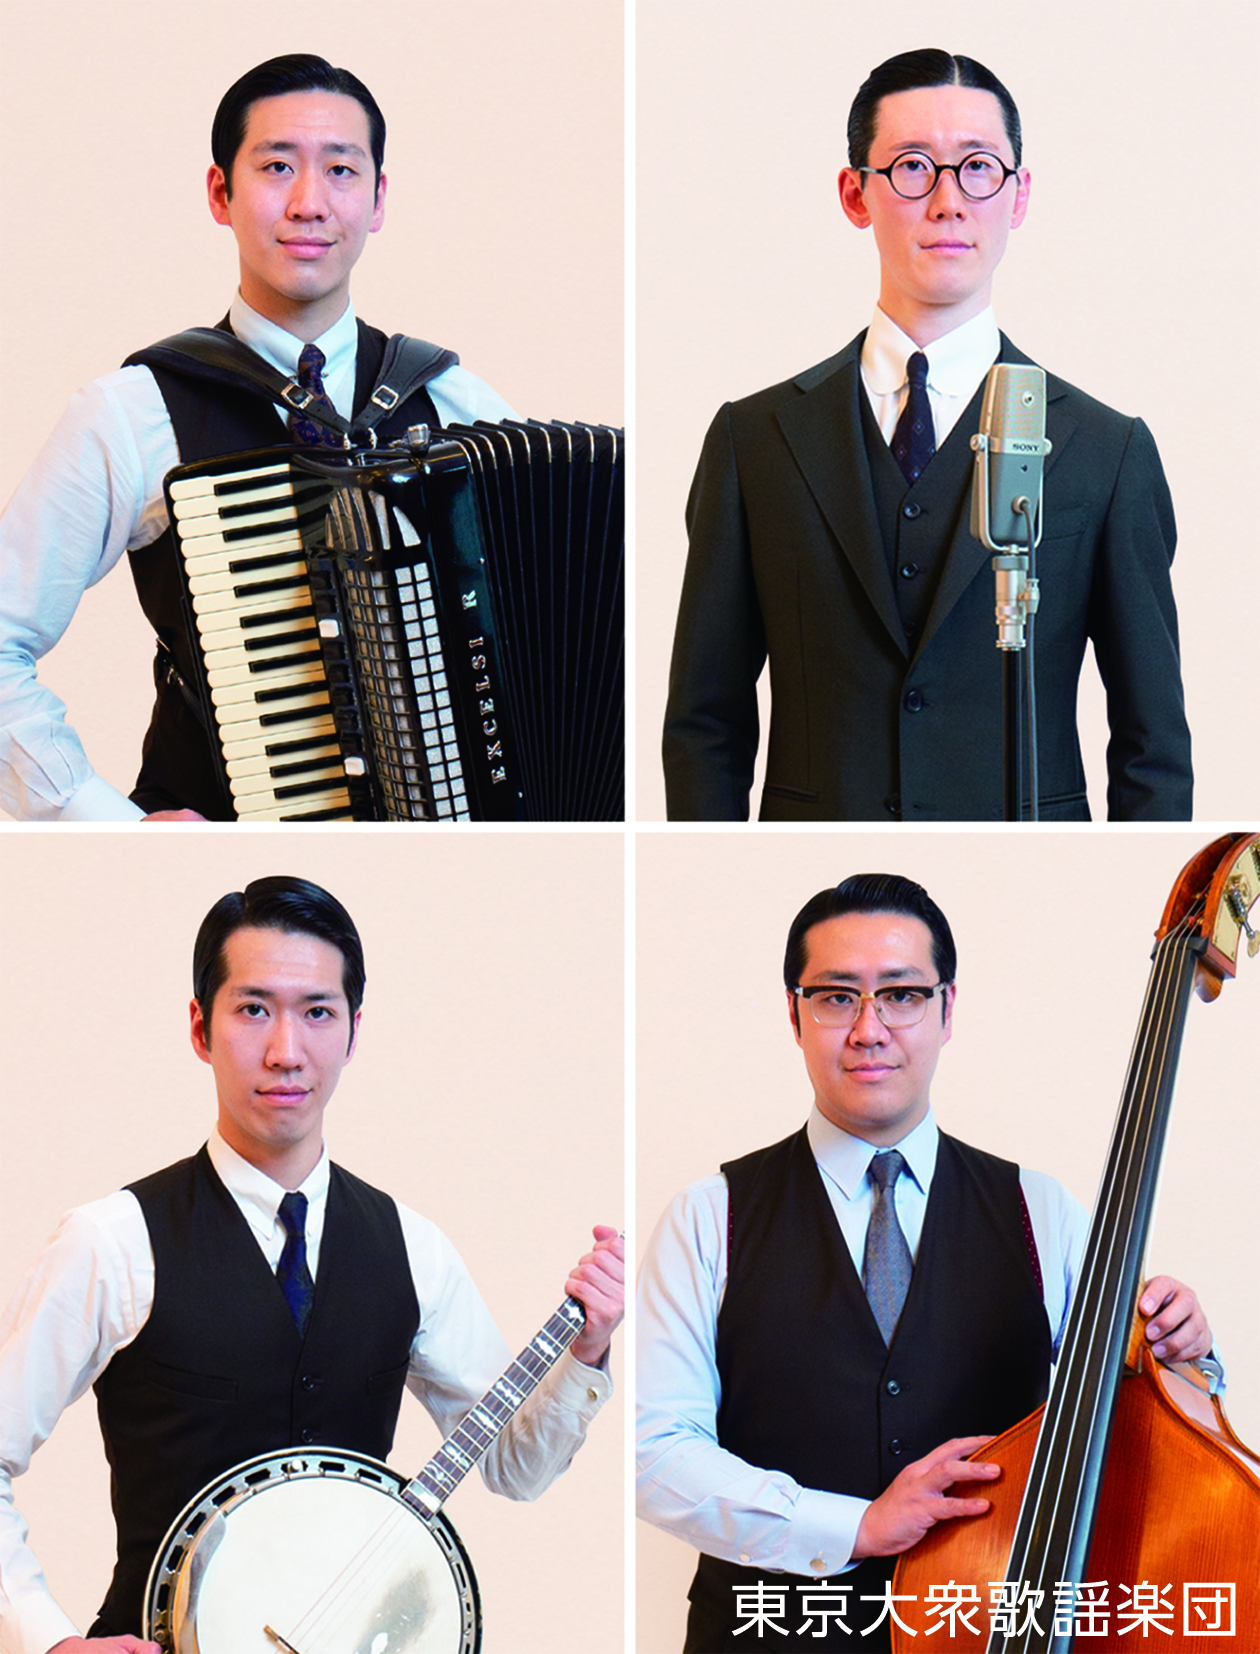 さいたま市・プラザイースト ホールにて9月25日(土)に
『東京大衆歌謡楽団コンサート』を開催！
～古き良き昭和初期の流行歌を令和の世へも歌い継ぐ高島4兄弟～